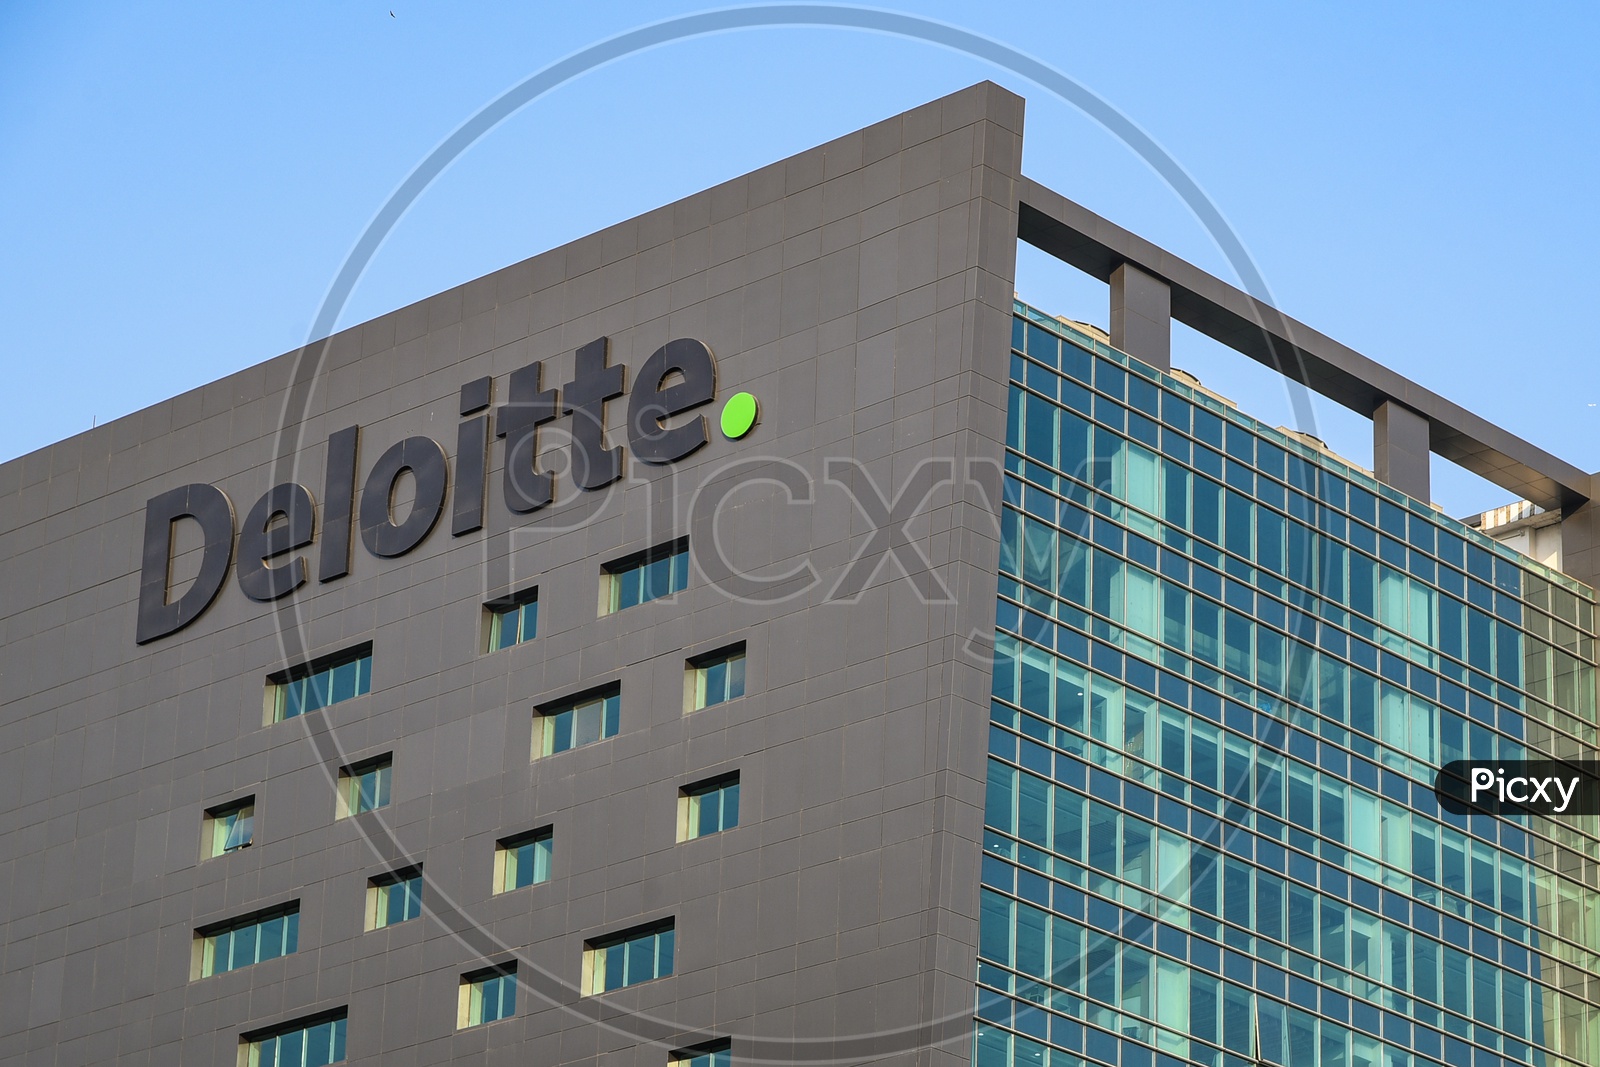 Deloitte Office with Logo